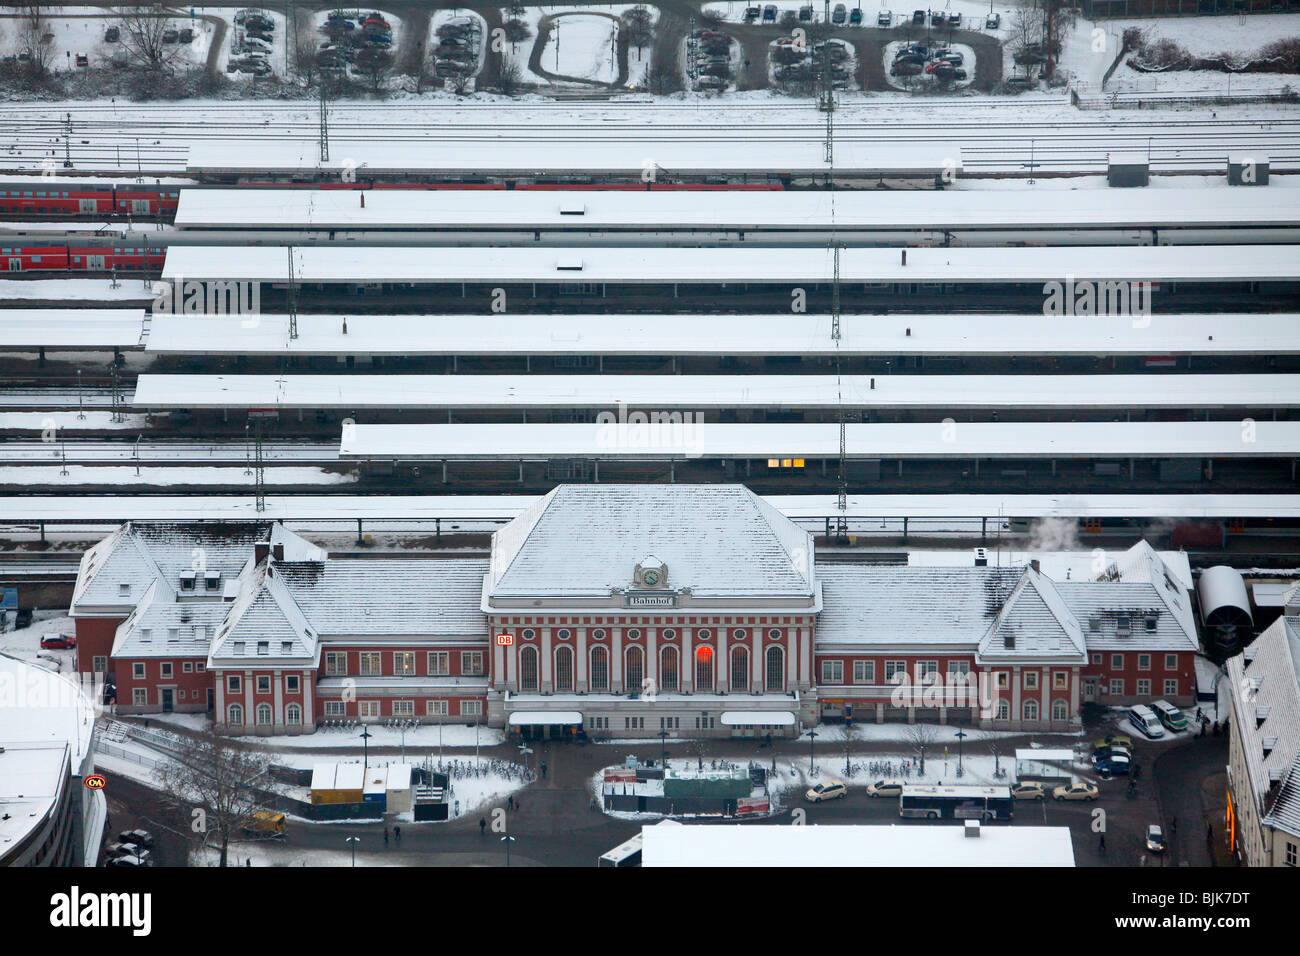 Foto aerea, la stazione ferroviaria centrale nella neve, Hamm, la zona della Ruhr, Renania settentrionale-Vestfalia, Germania, Europa Foto Stock